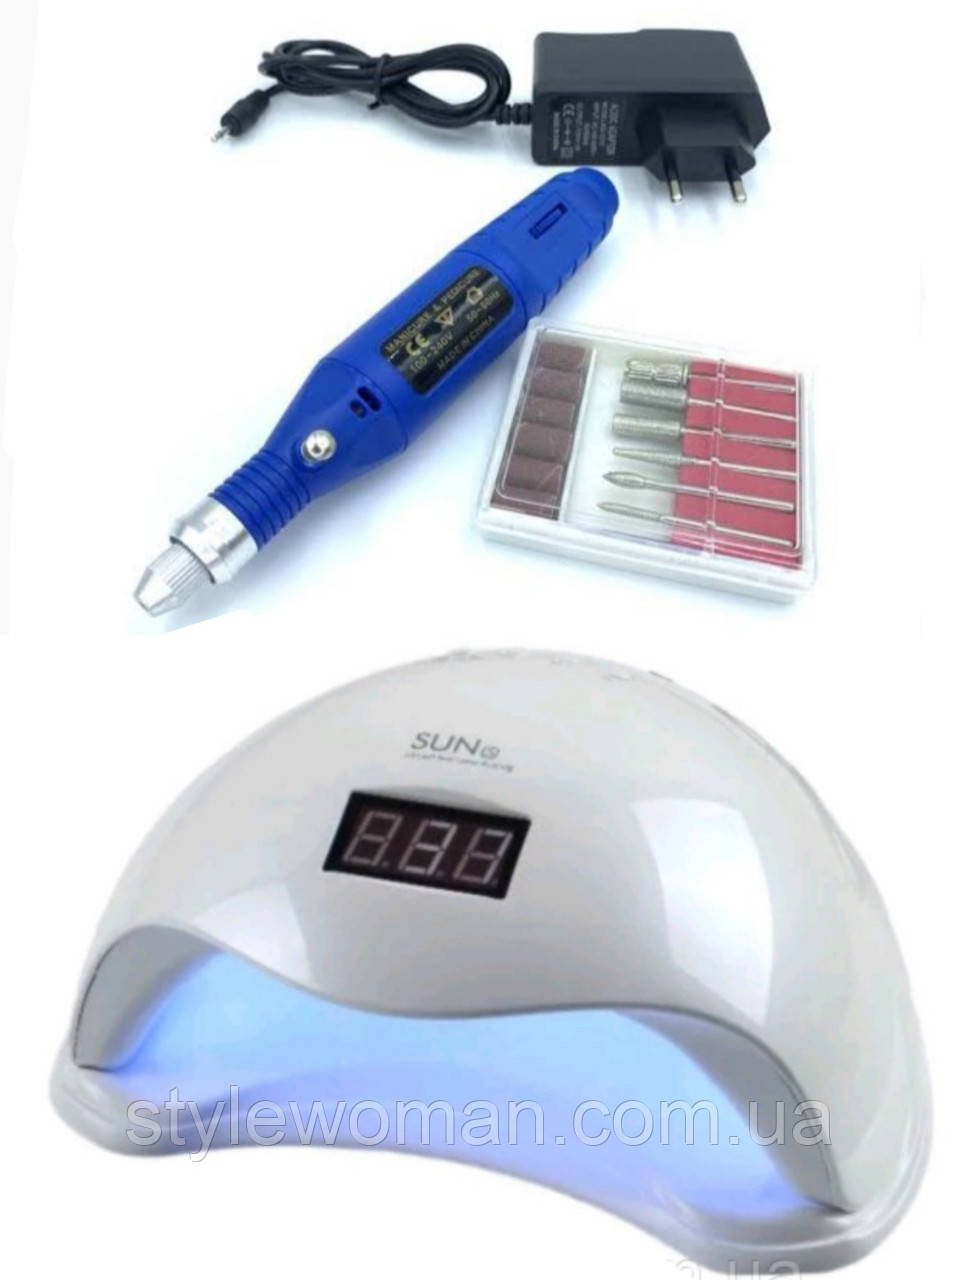 Стартовий набір манікюр педикюр для лампи-початківців Sun 5 48 вт і ручка фрезер